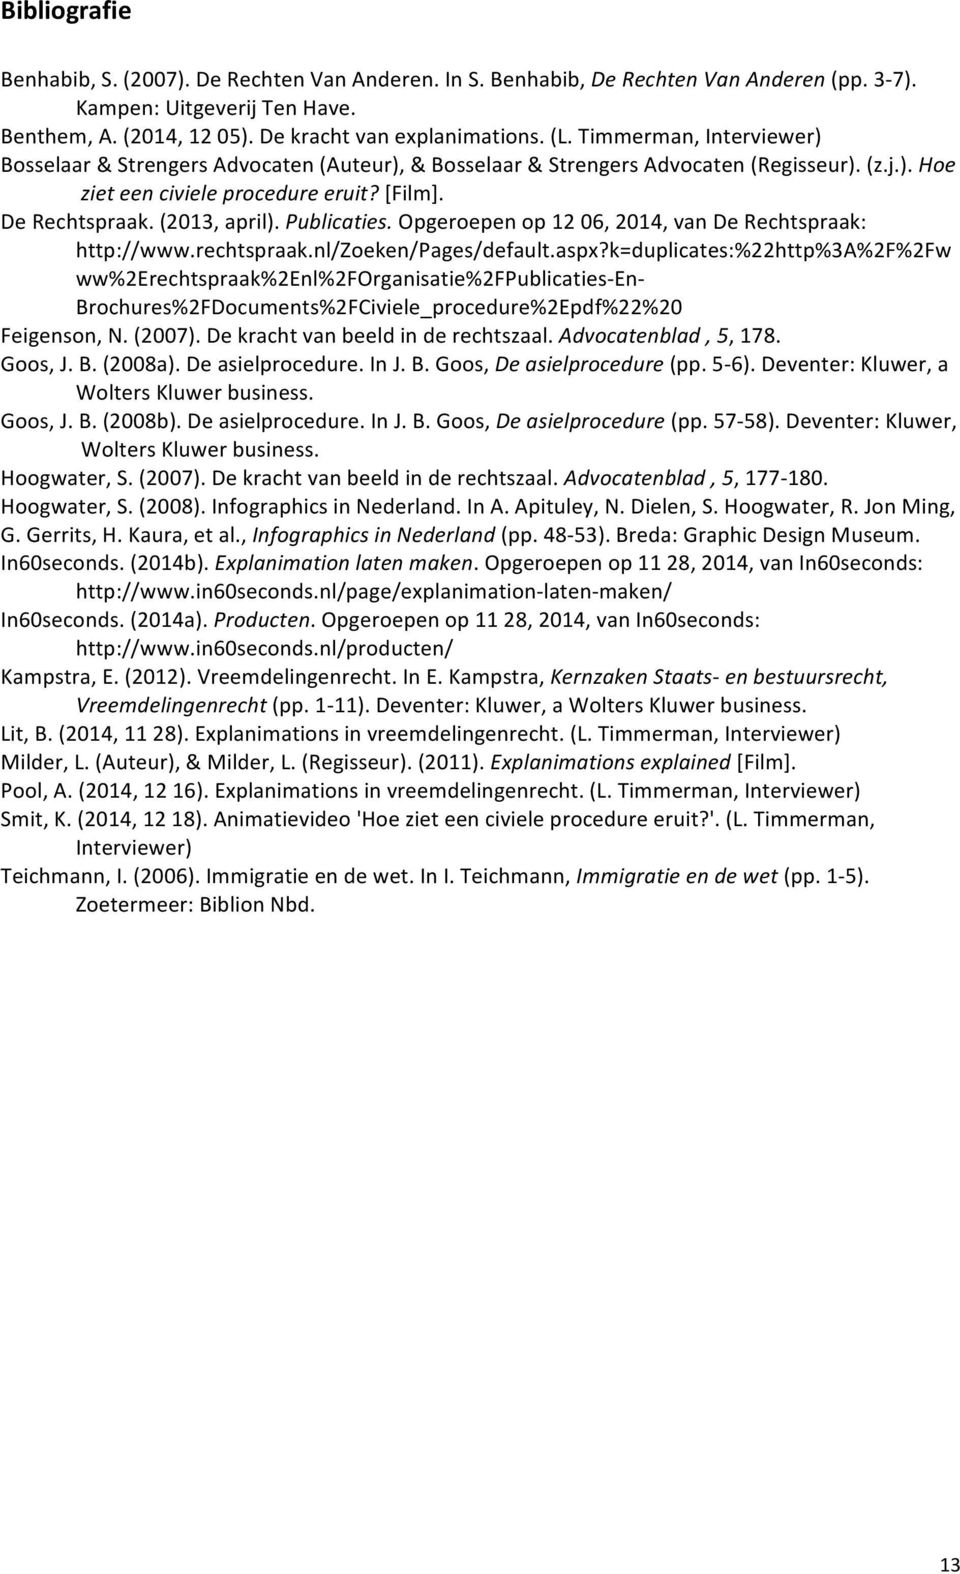 Publicaties. Opgeroepen op 12 06, 2014, van De Rechtspraak: http://www.rechtspraak.nl/zoeken/pages/default.aspx?